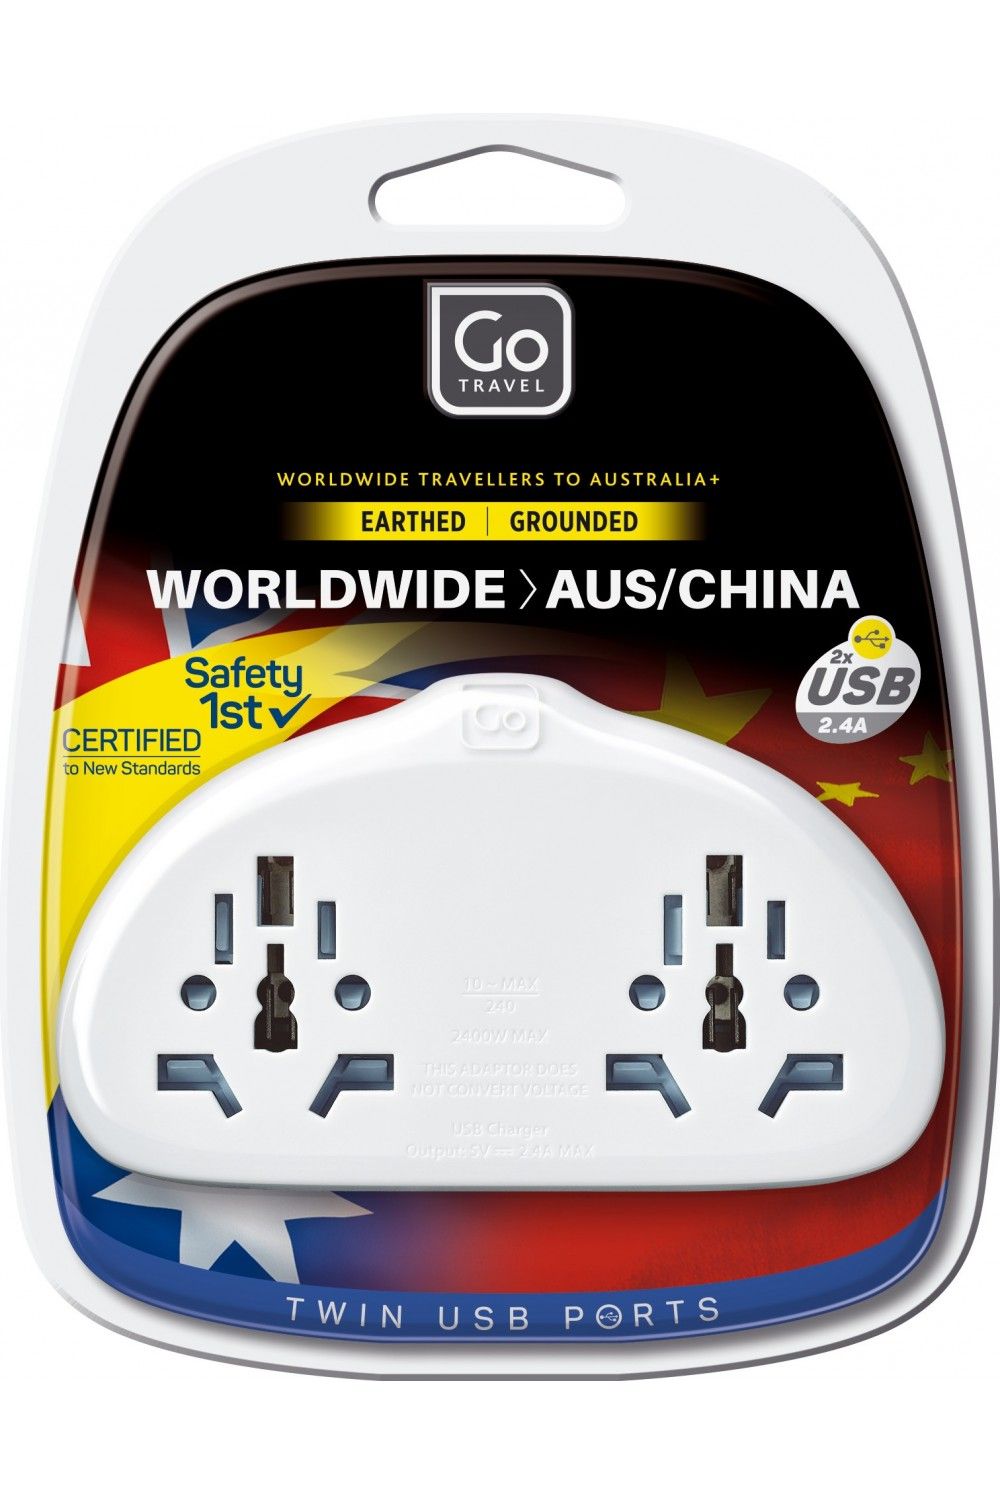 Go Travel Duo Adaptor + USB partout dans le monde - Australie / Chine